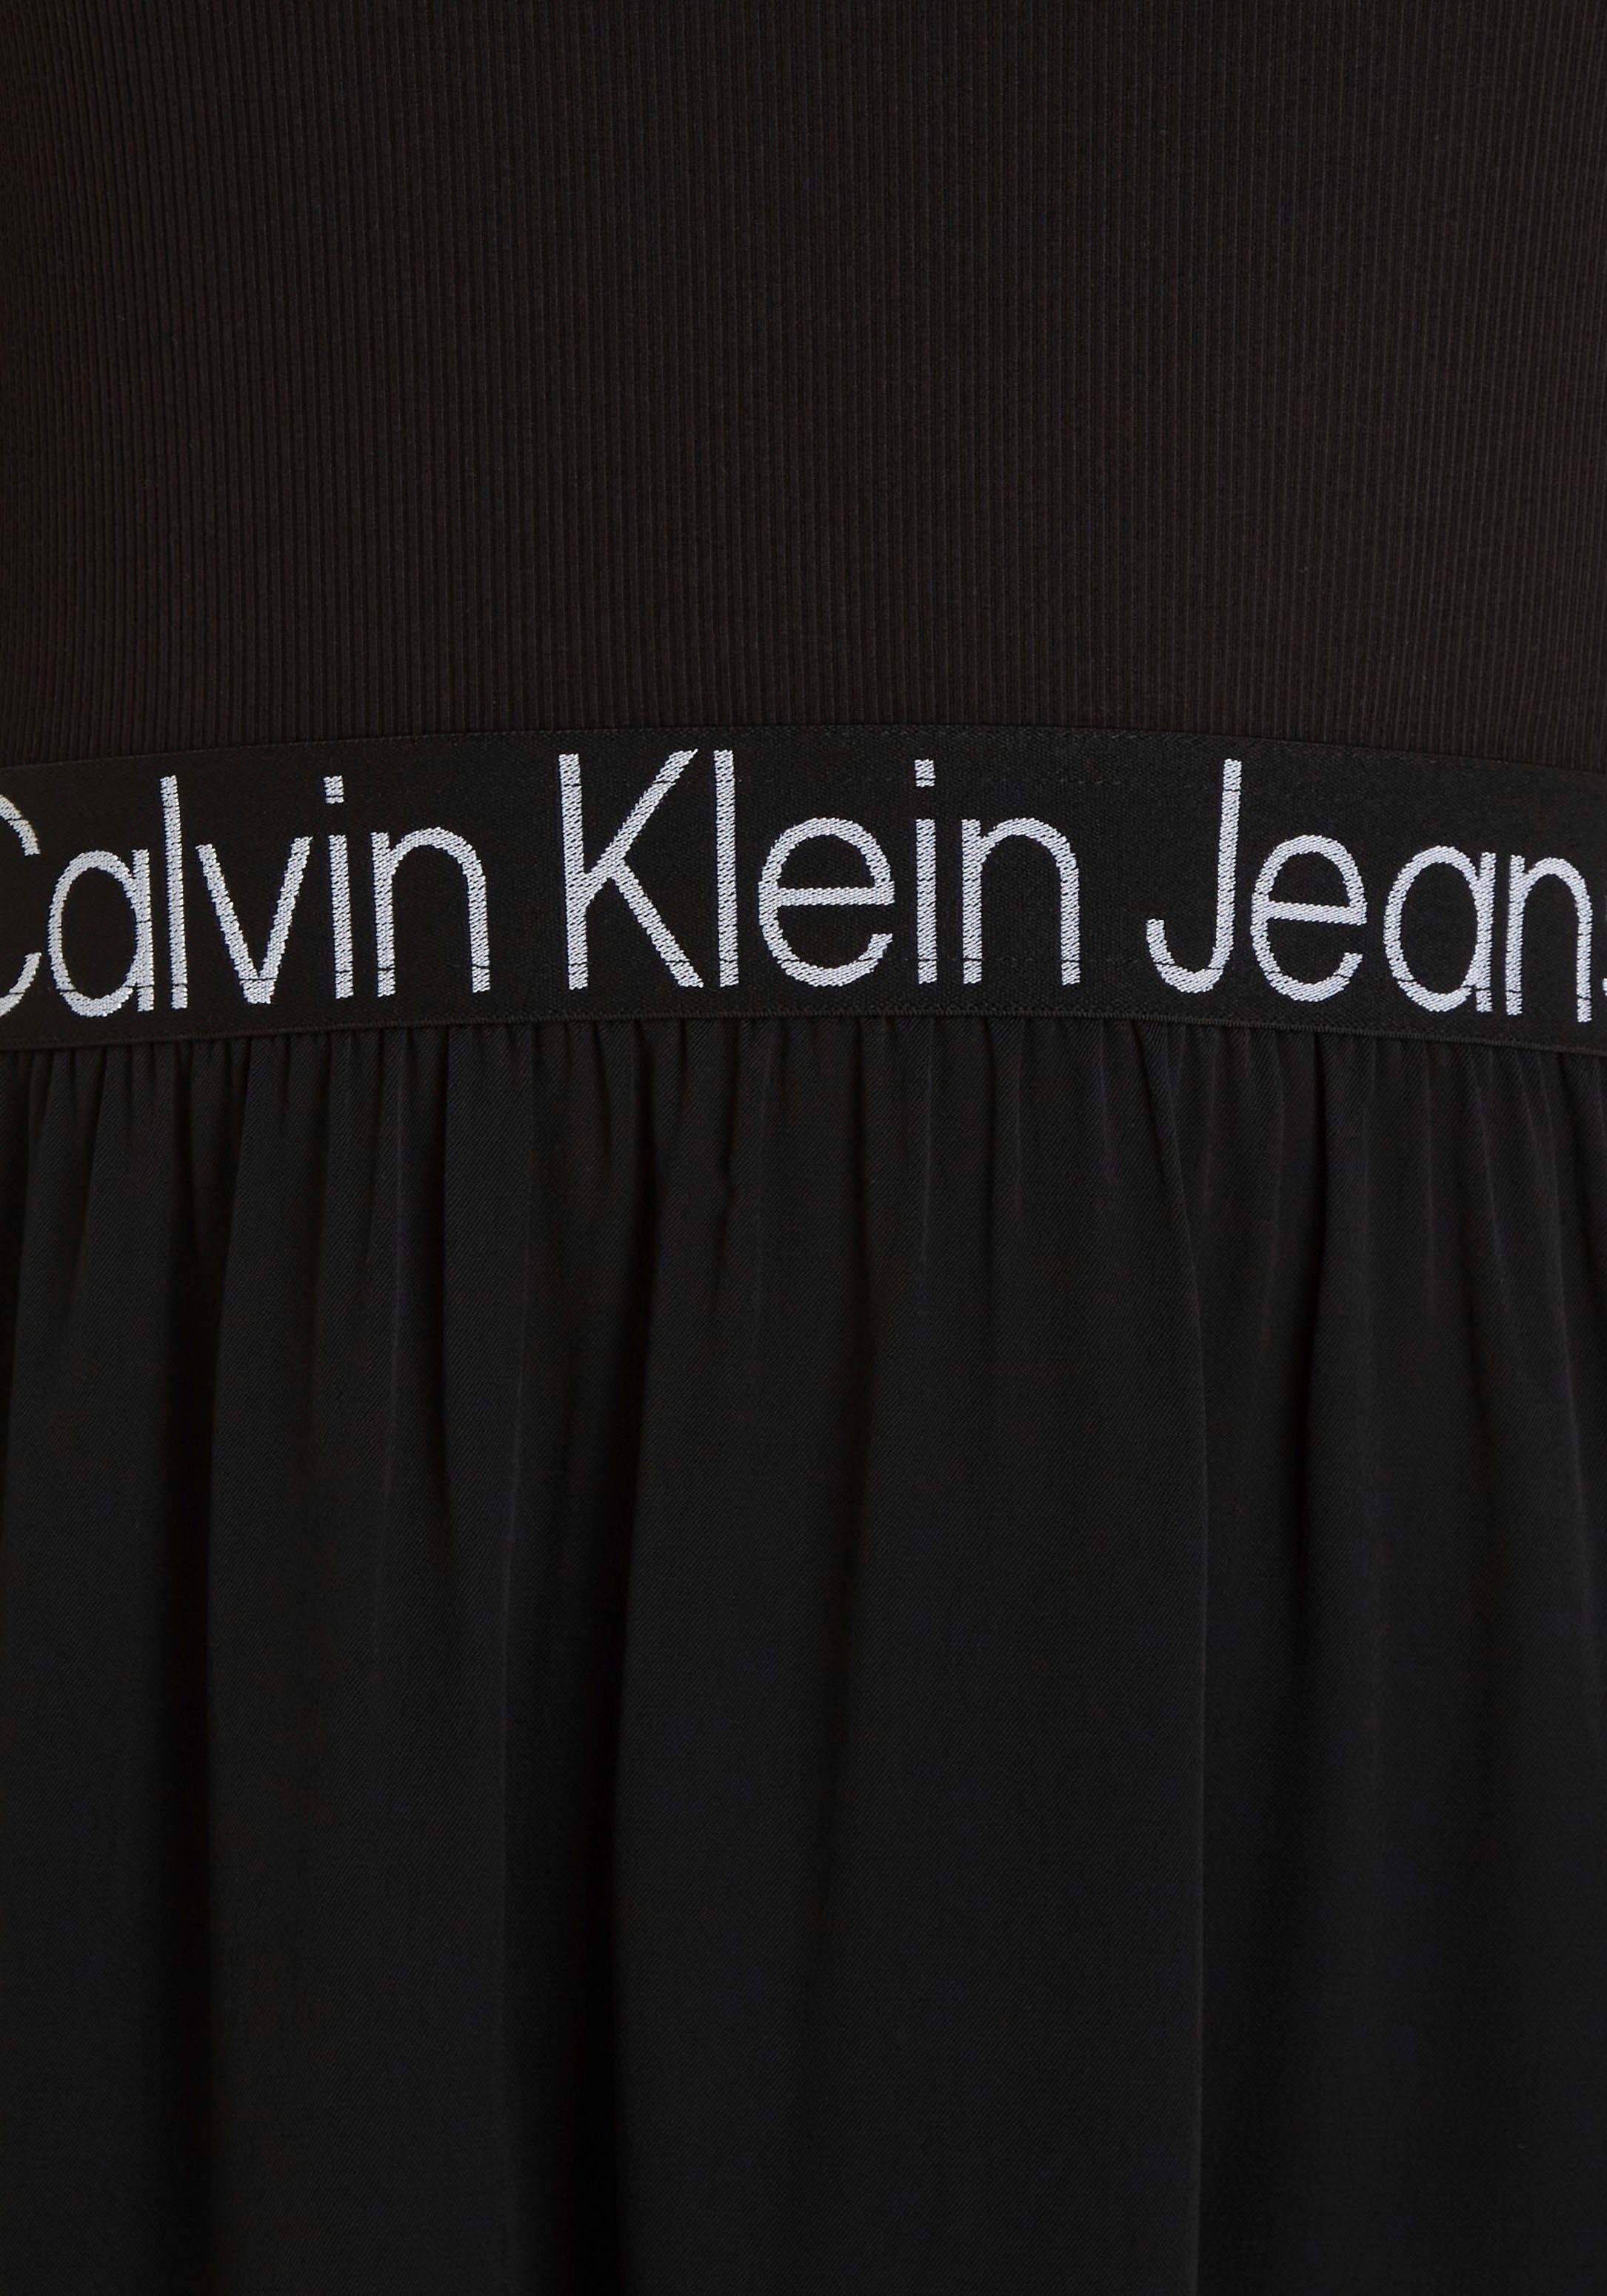 Klein im Jeans Materialmix 2-in-1-Kleid Calvin schwarz